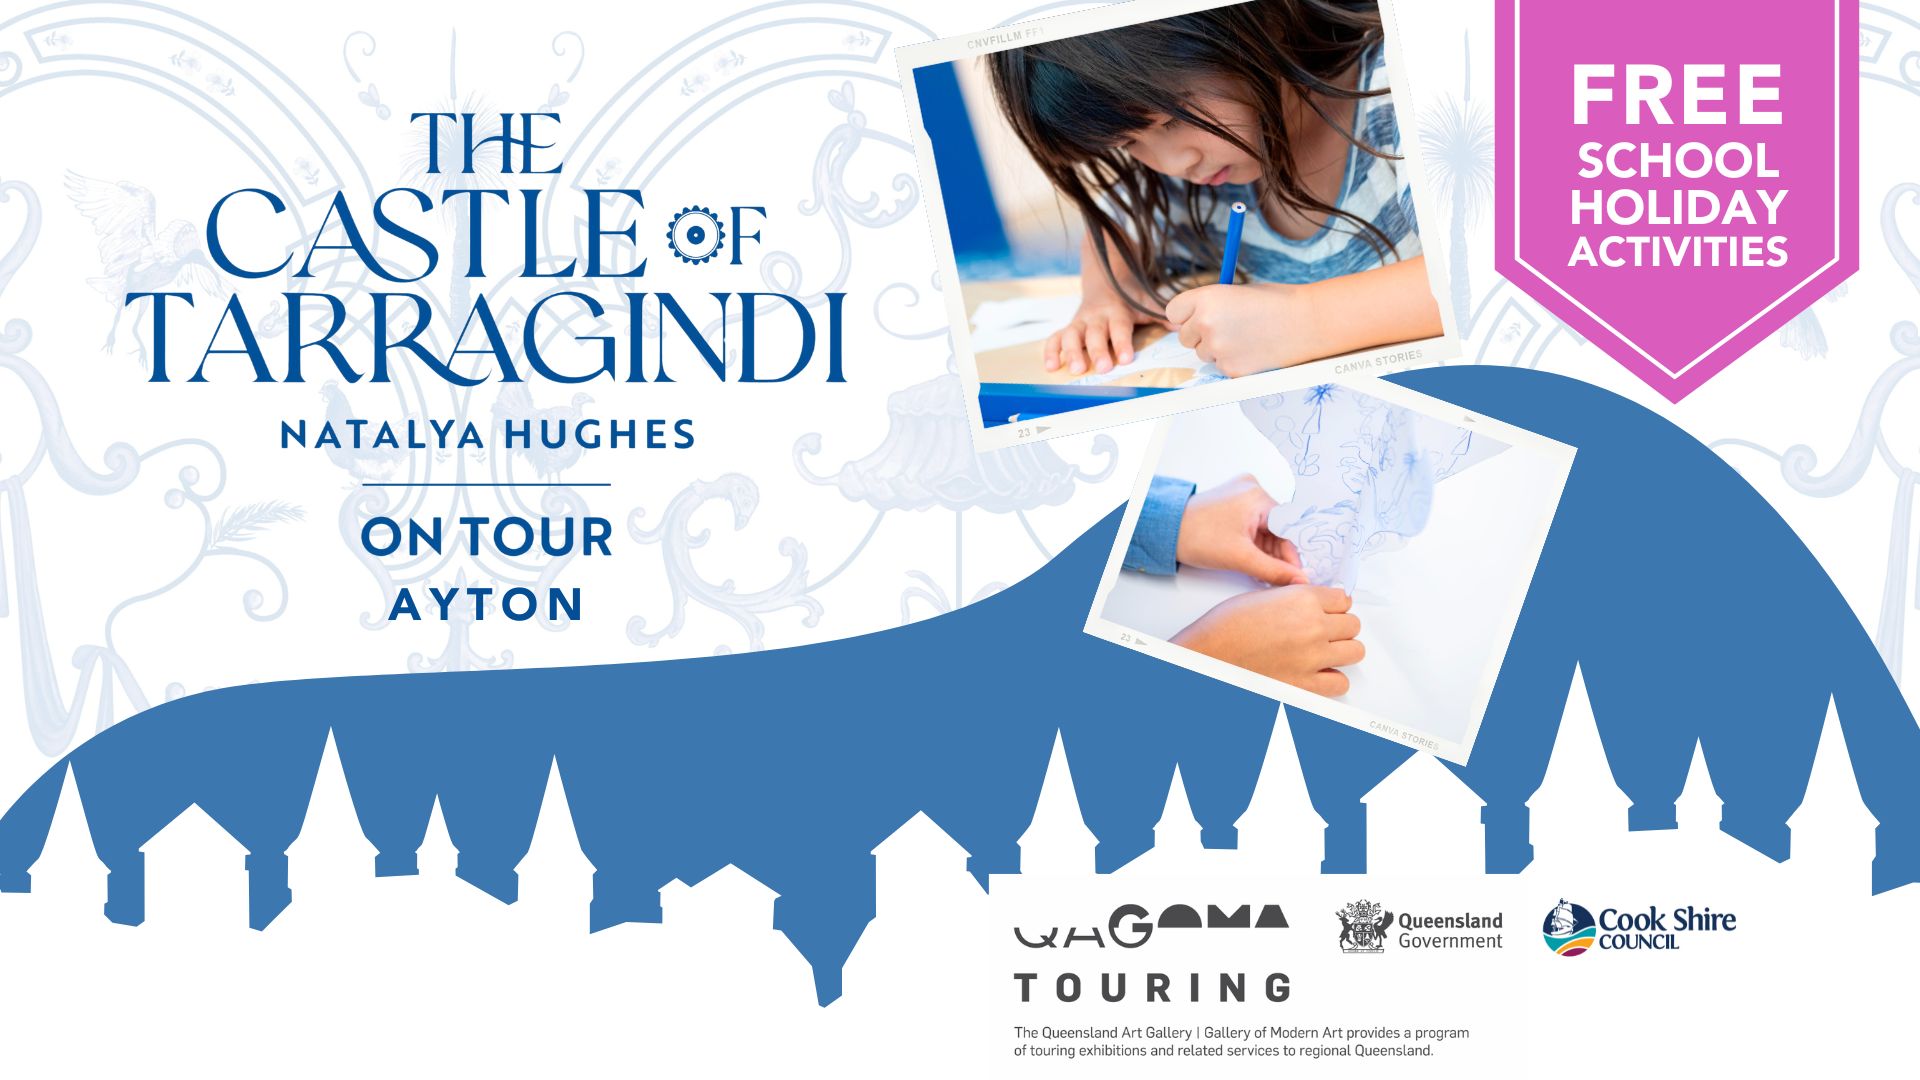 The Castle of Tarragindi tours to Ayton